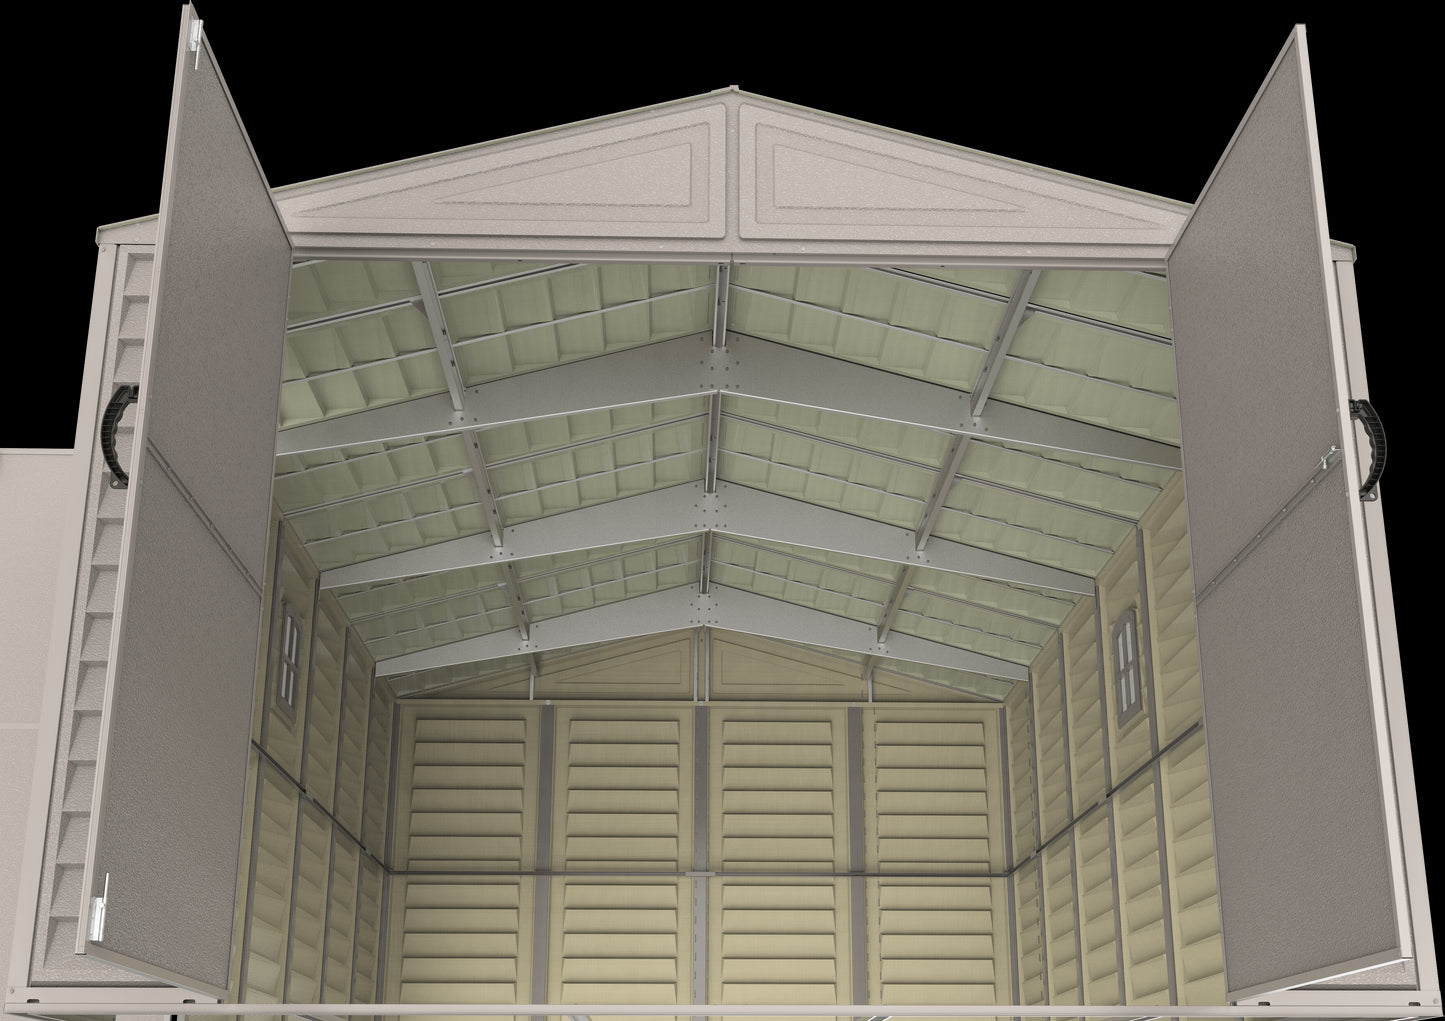 Duramax Vinyl Garage 10.5x31 w/ Foundation 2 Windows 15626 interior upward view of ceiling